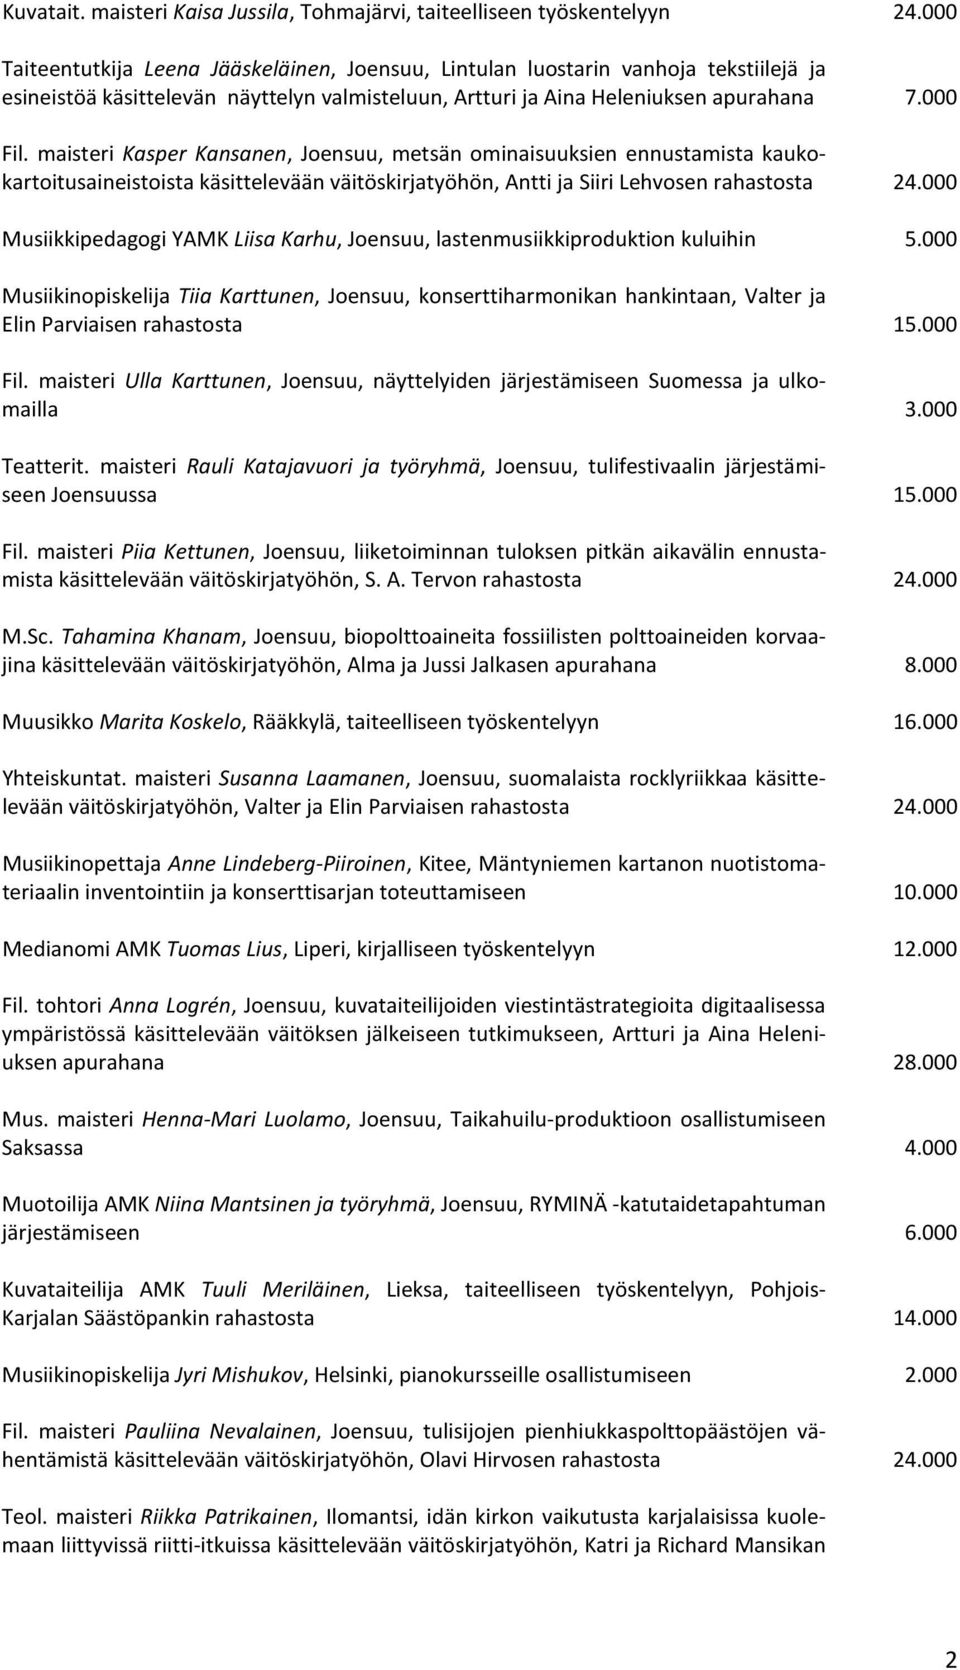 maisteri Kasper Kansanen, Joensuu, metsän ominaisuuksien ennustamista kaukokartoitusaineistoista käsittelevään väitöskirjatyöhön, Antti ja Siiri Lehvosen rahastosta 24.